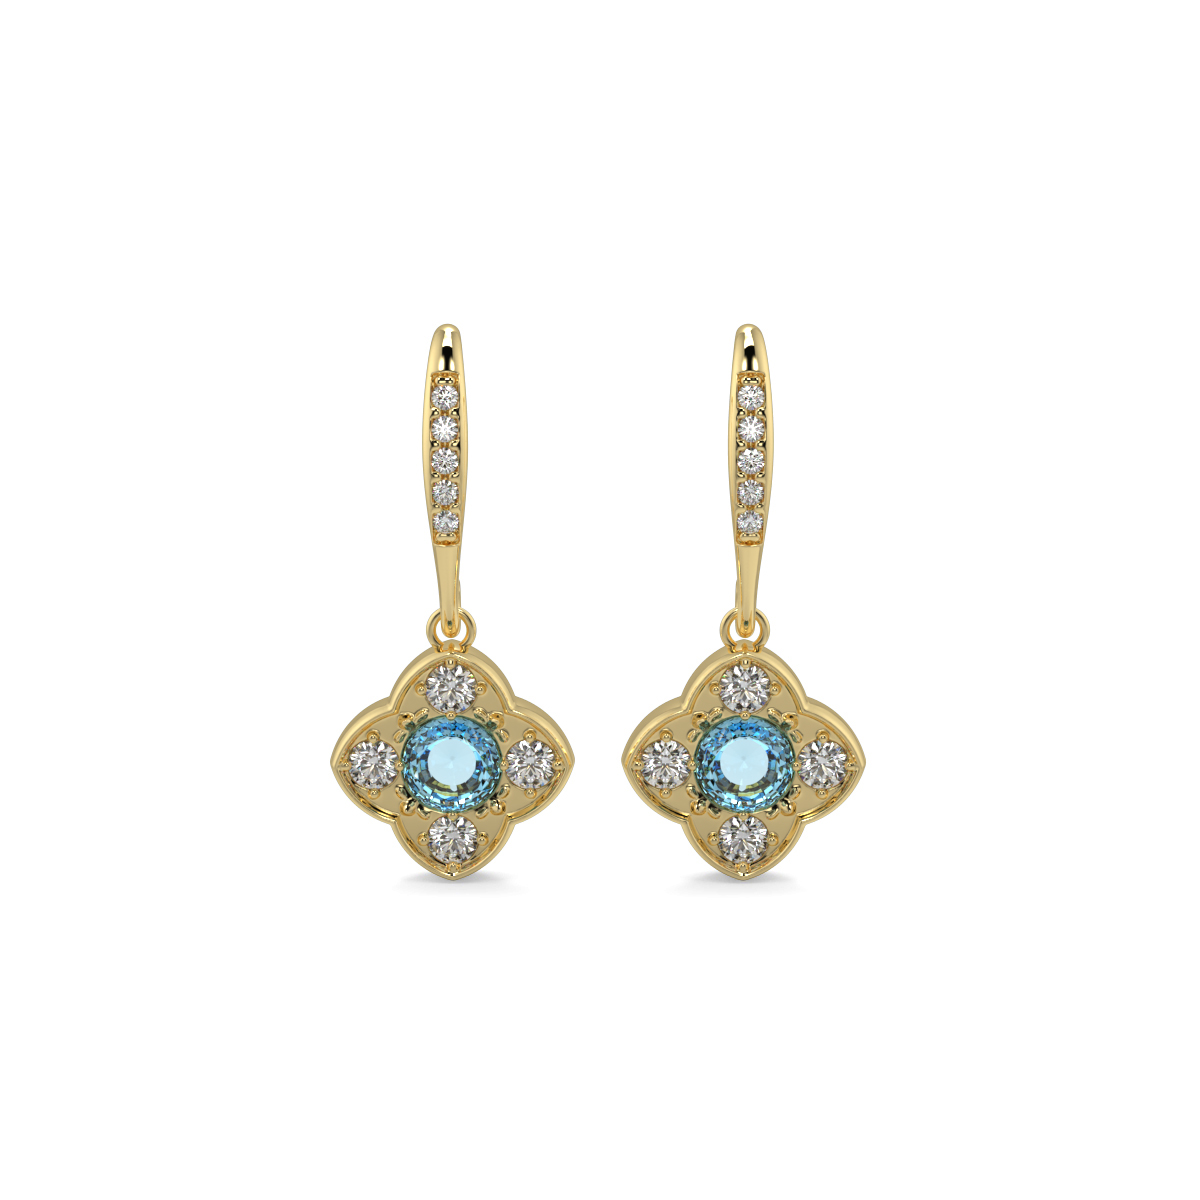 Blue Flora earrings